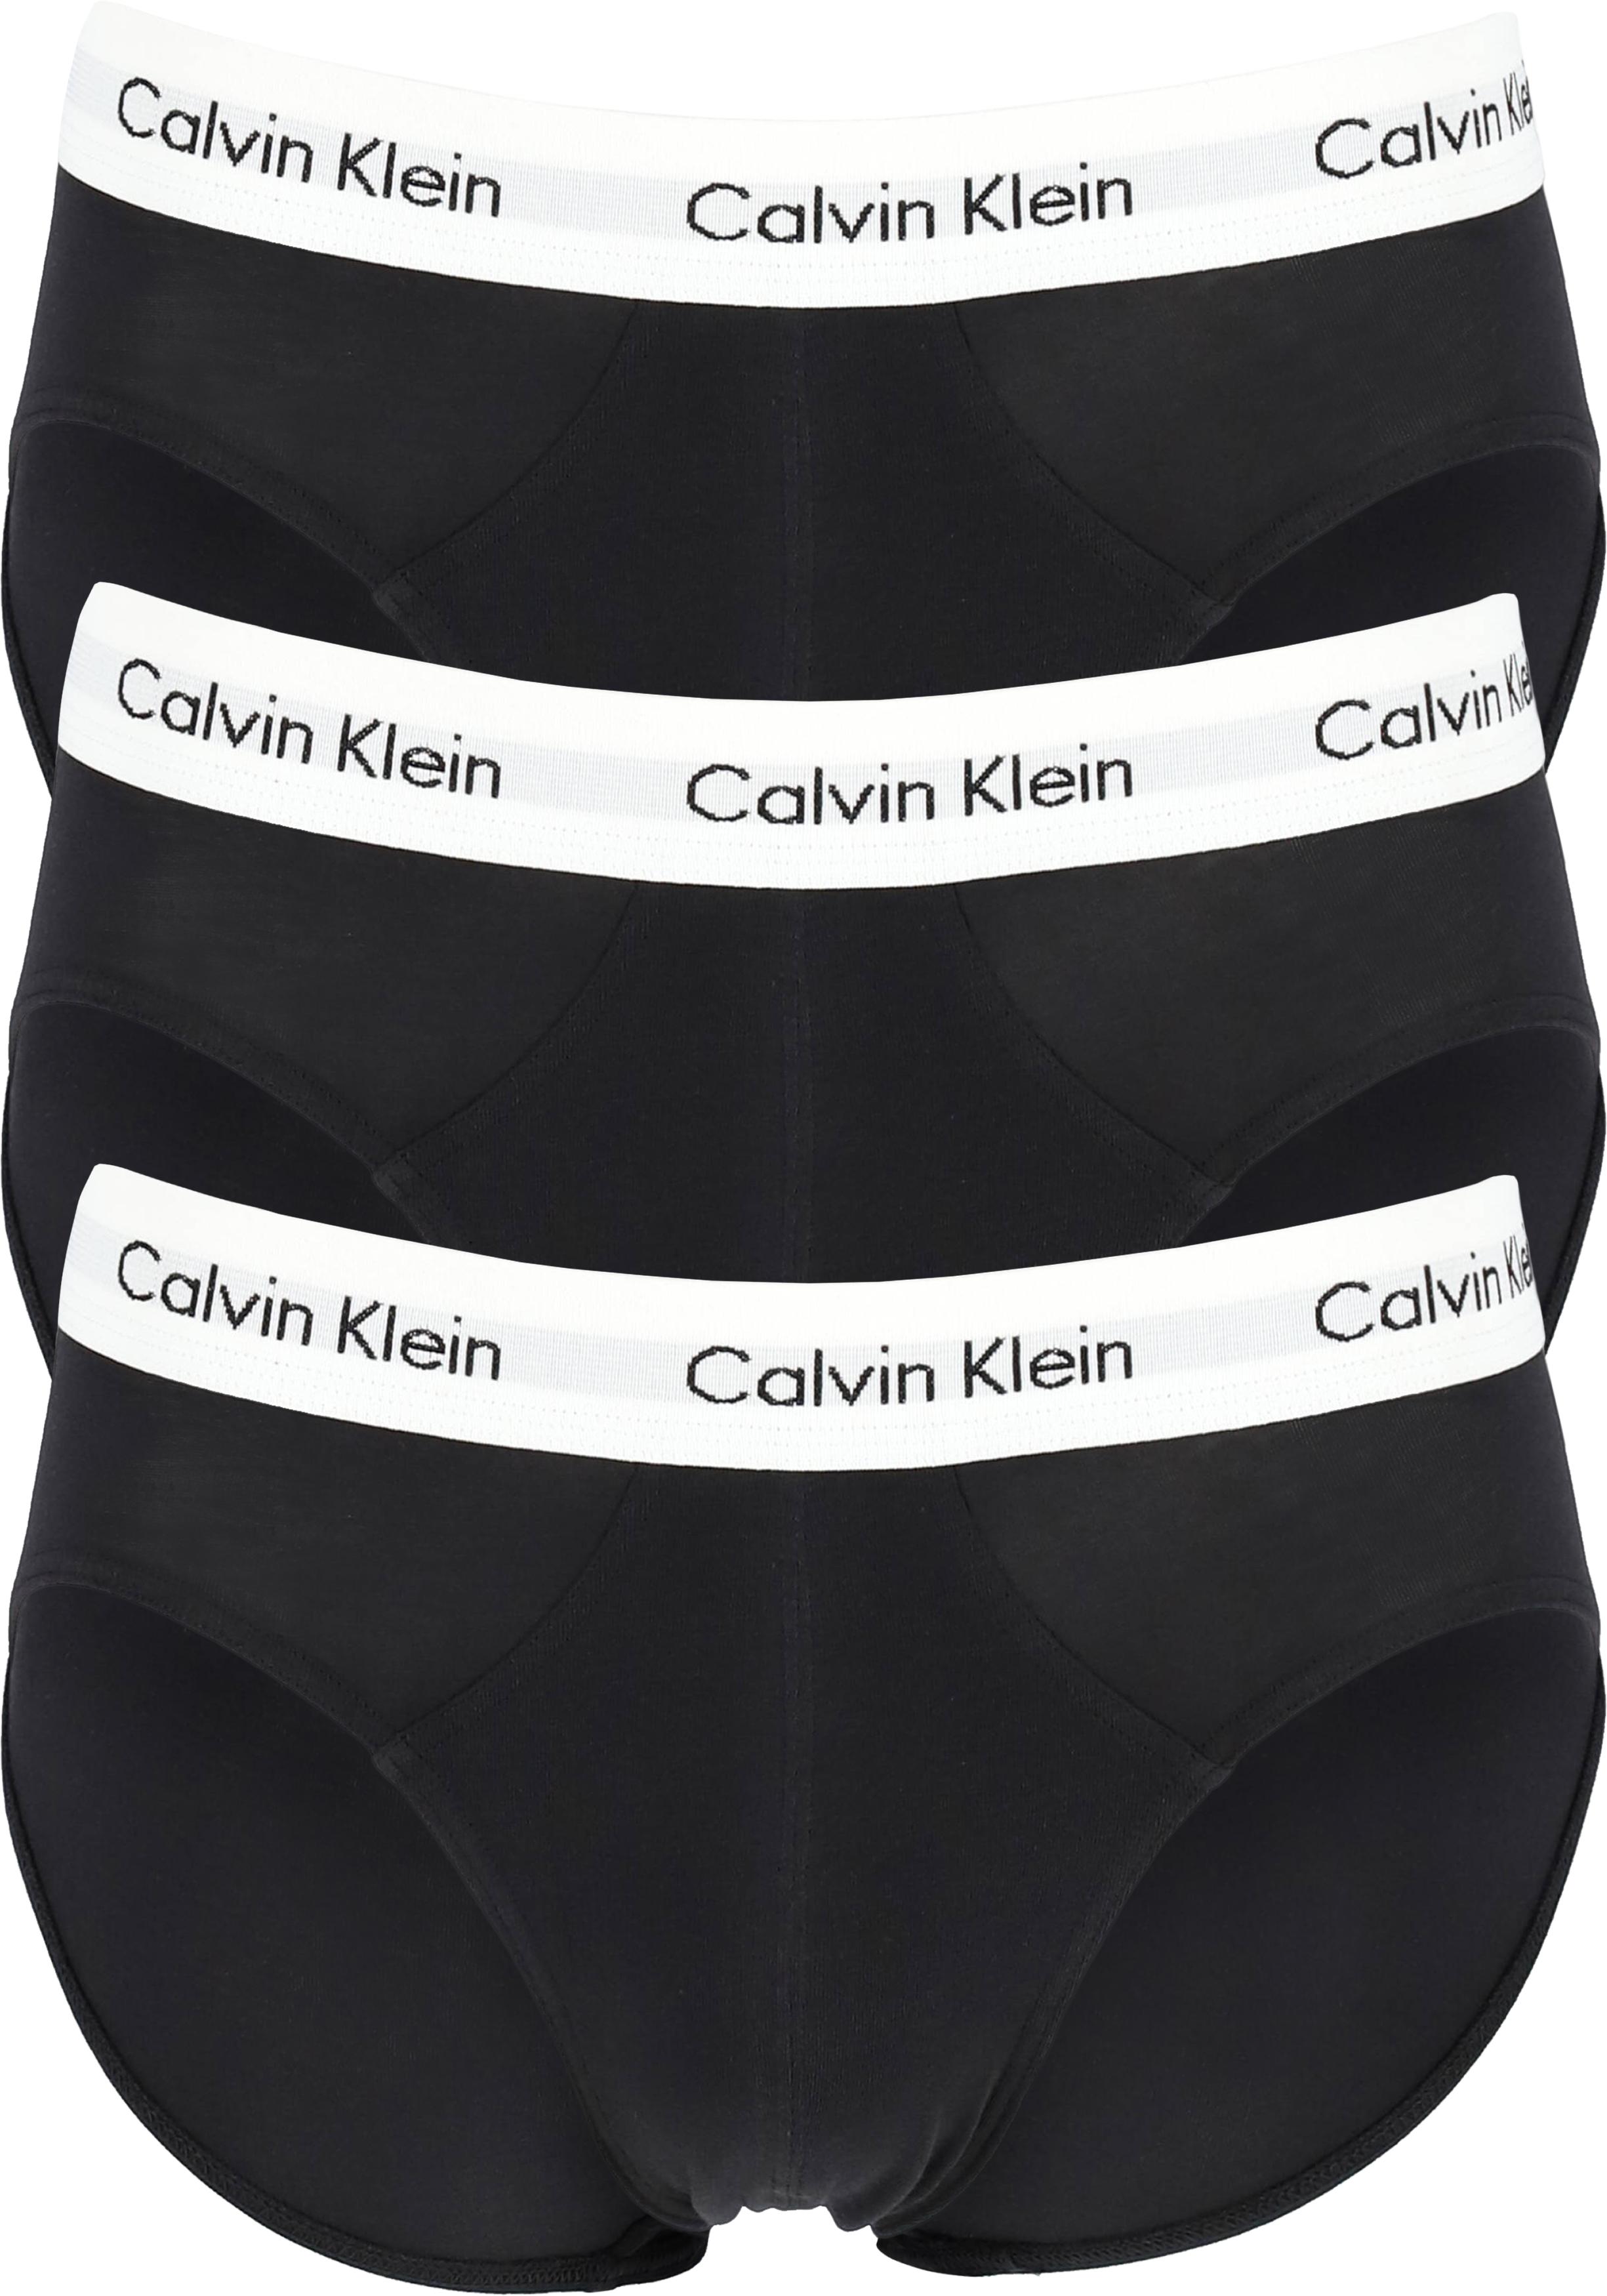 Verdwijnen molecuul Accommodatie Calvin Klein hipster brief (3-pack), heren slips, zwart met witte band -  Zomer SALE tot 50% korting